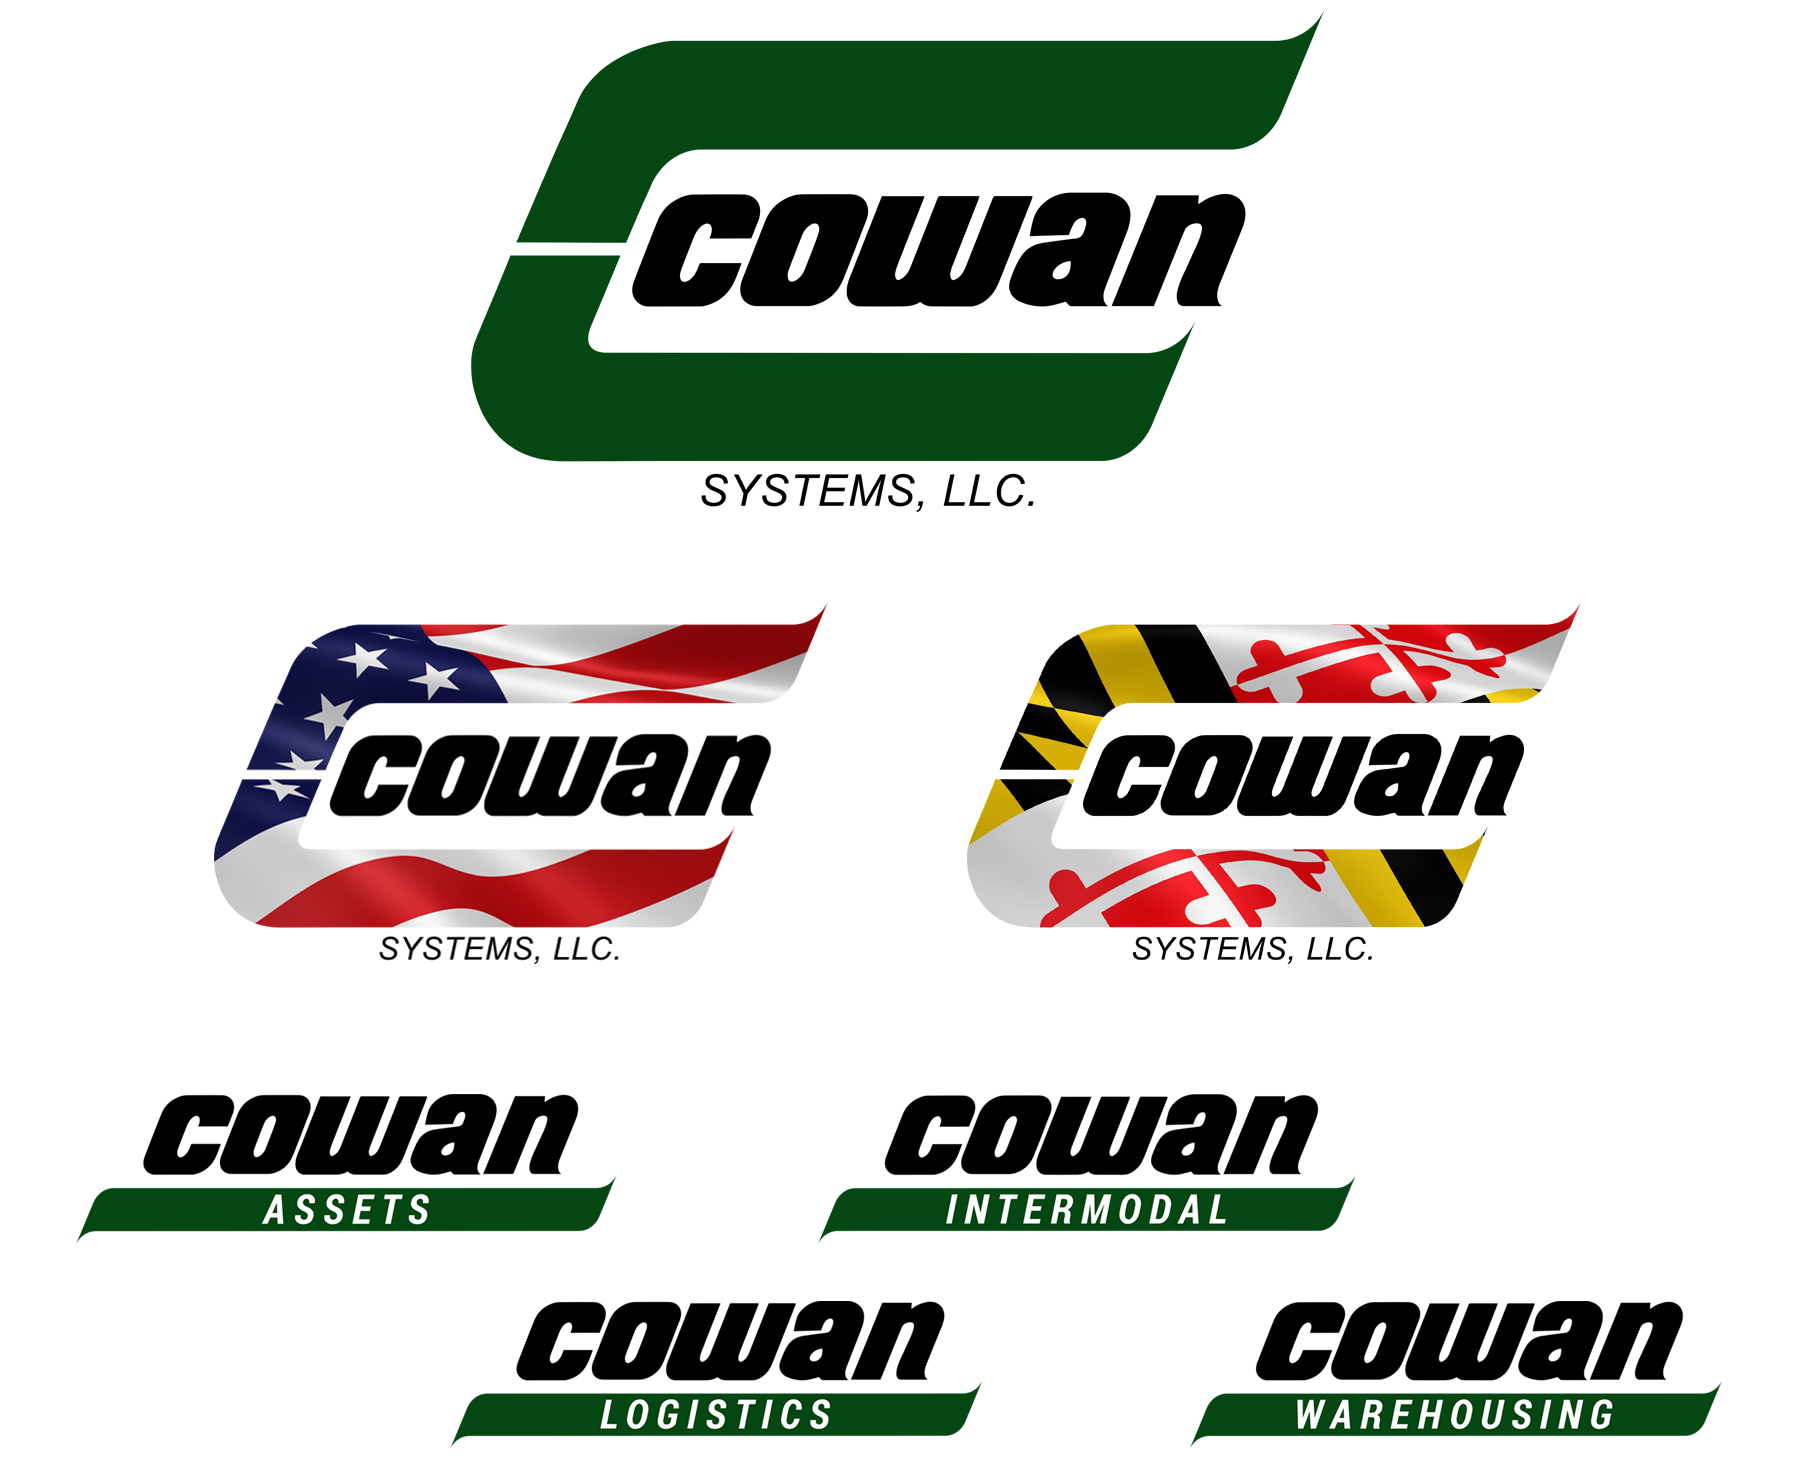 Cowan Systems Identity